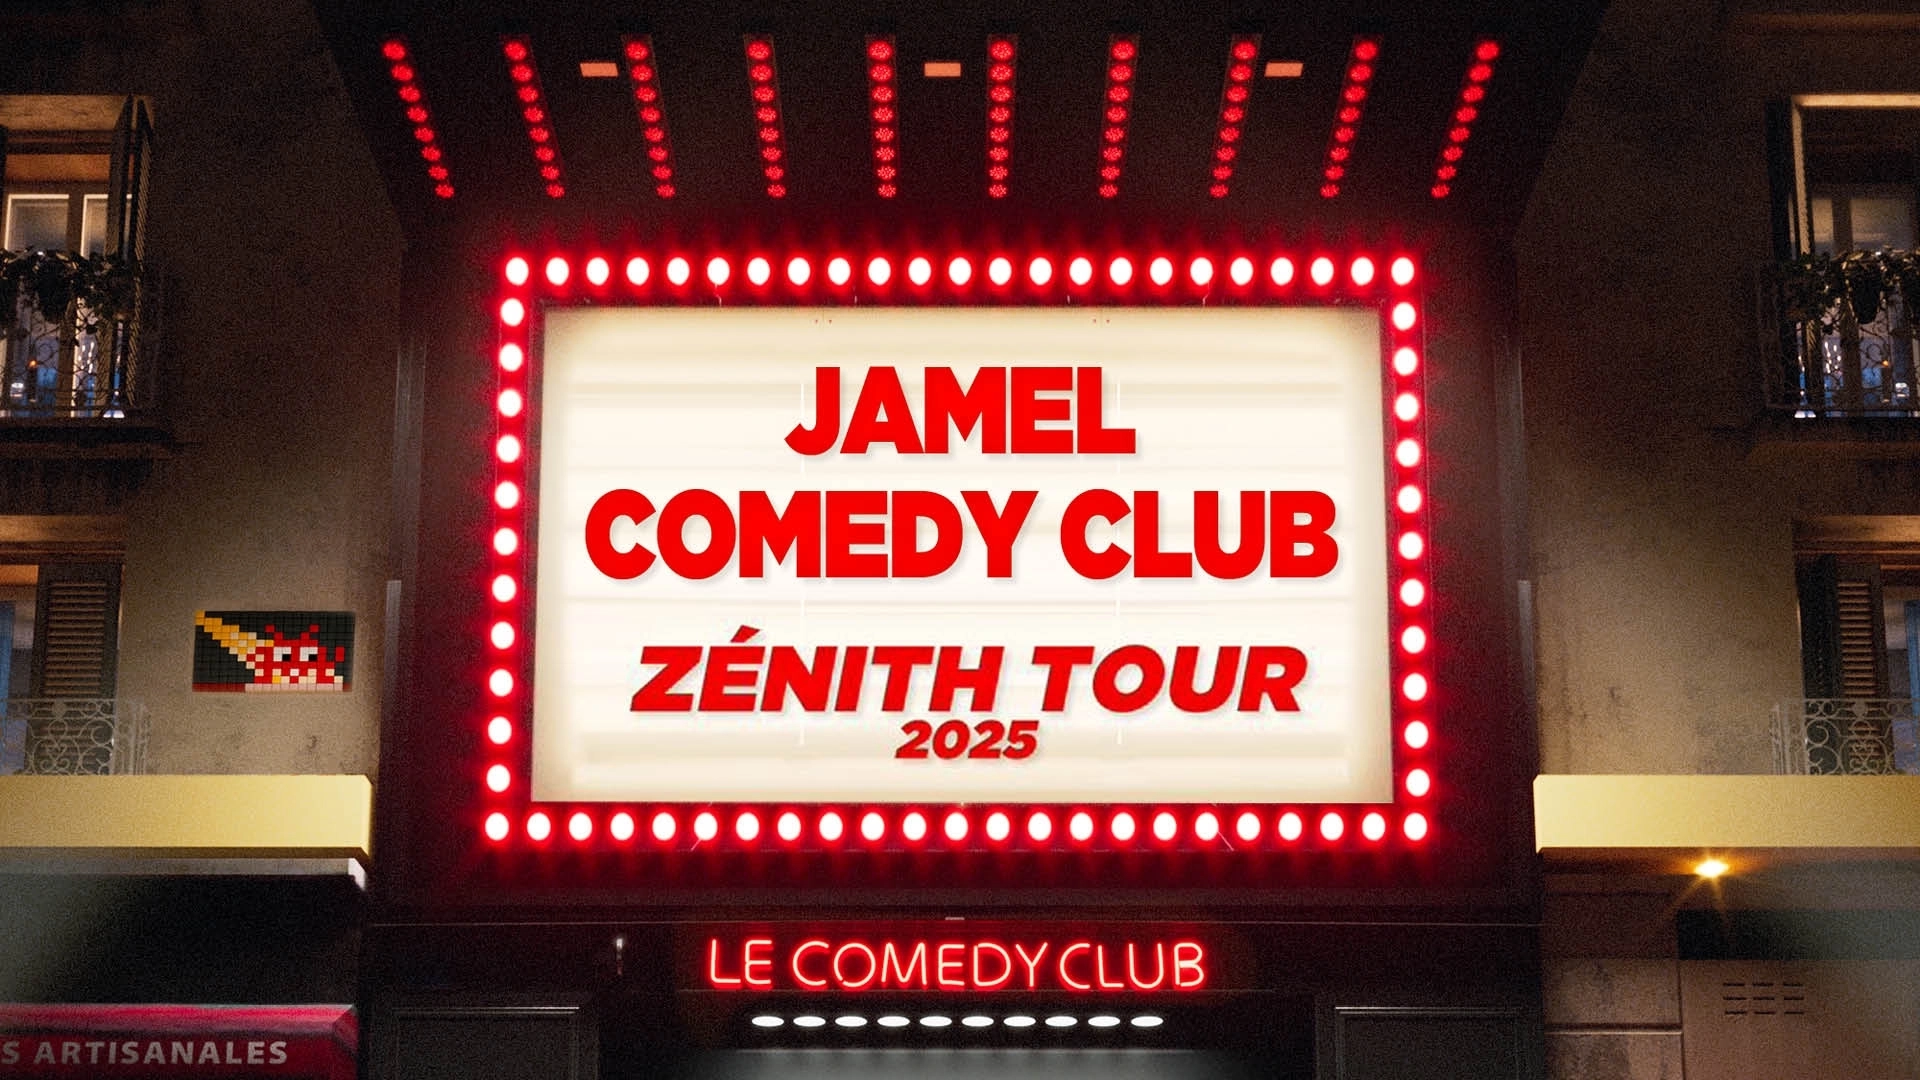 Jamel Comedy Club Zenith Tour 2025 in der Genf Arena Tickets